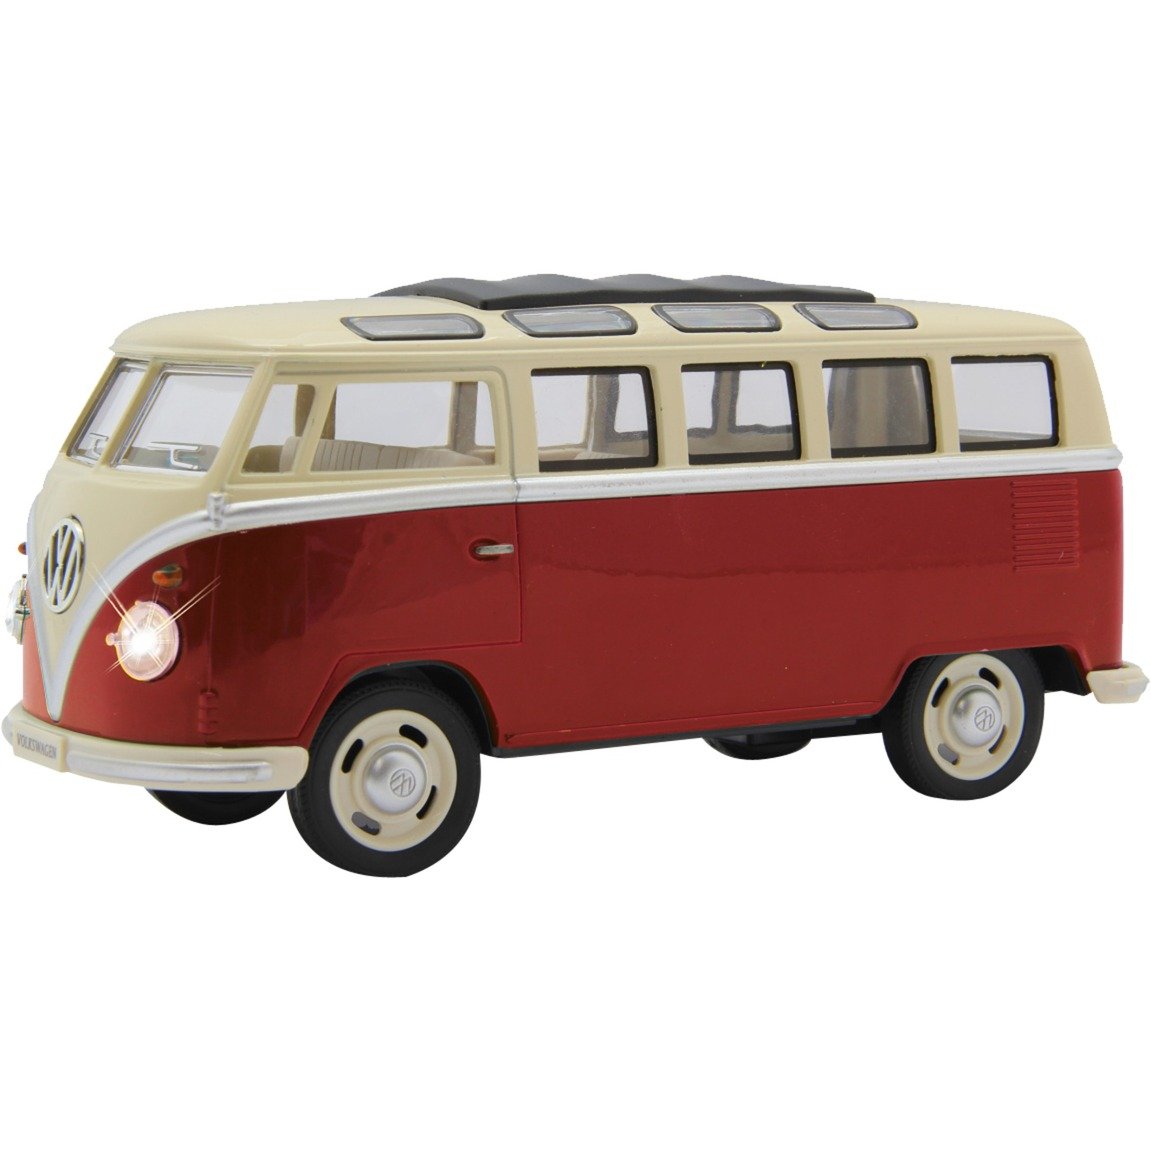 Image of Alternate - VW T1 Bus, Modellfahrzeug online einkaufen bei Alternate